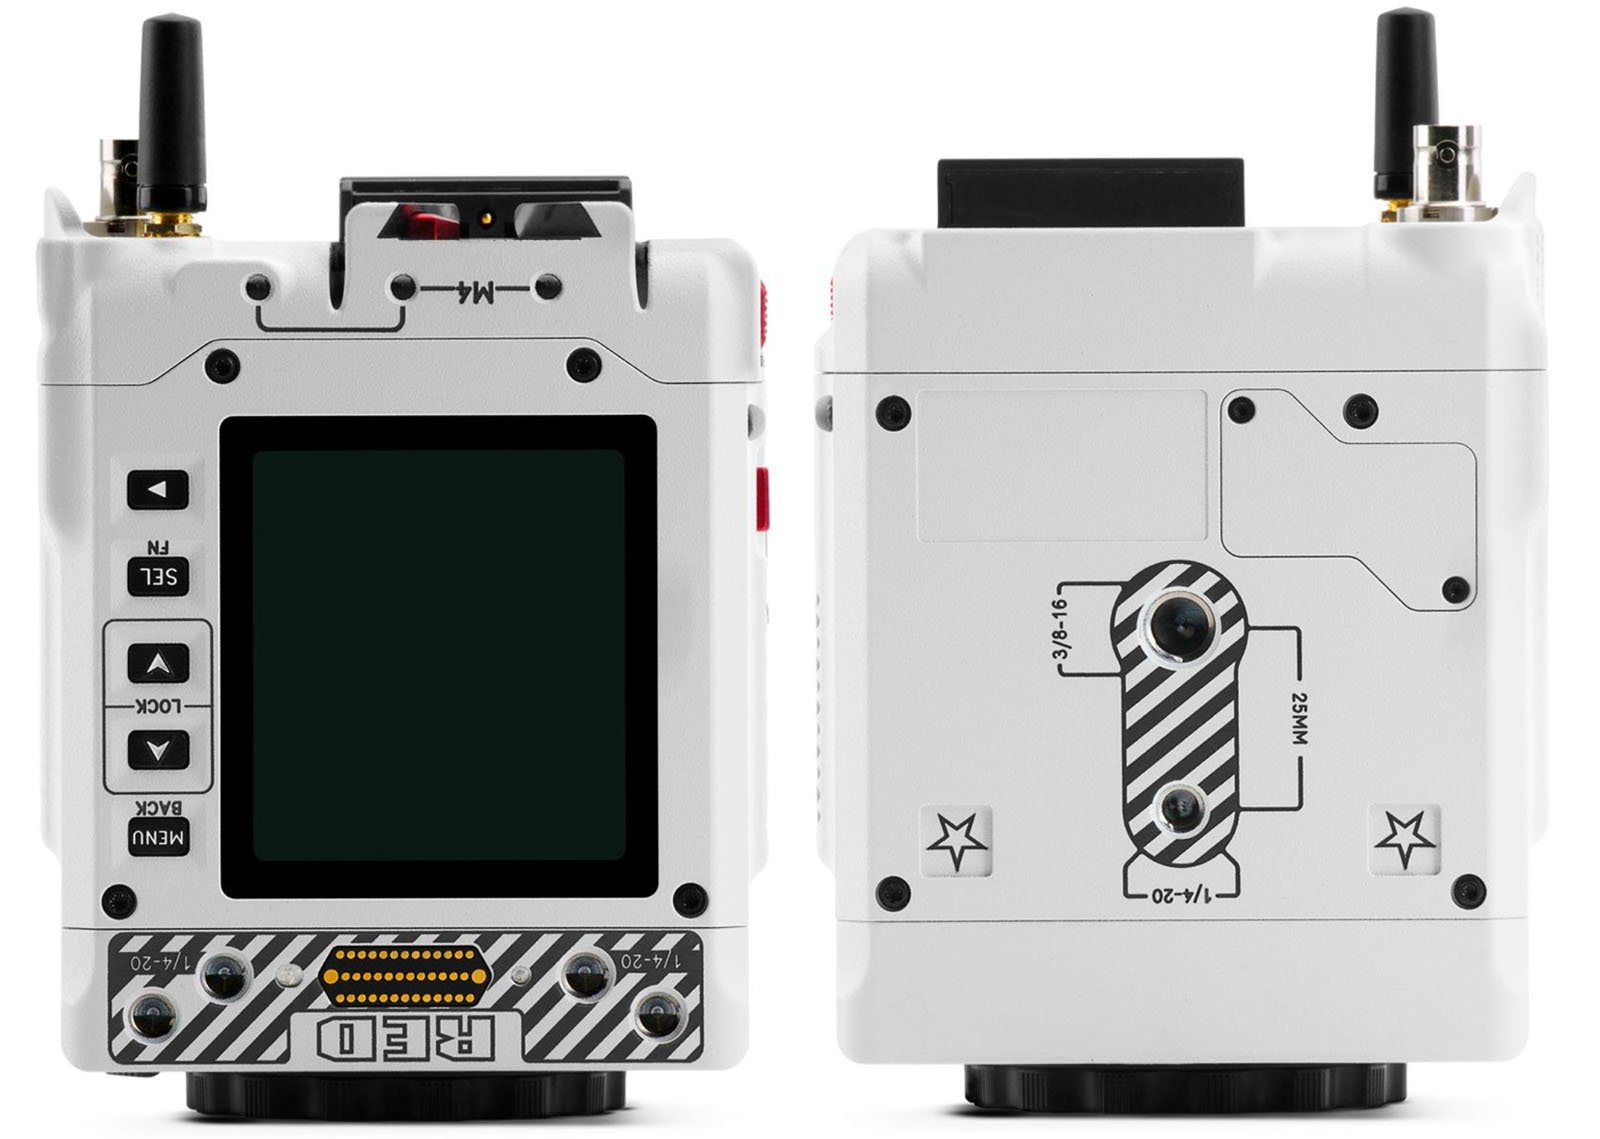 Caméra de cinéma RED Komodo-X 6K